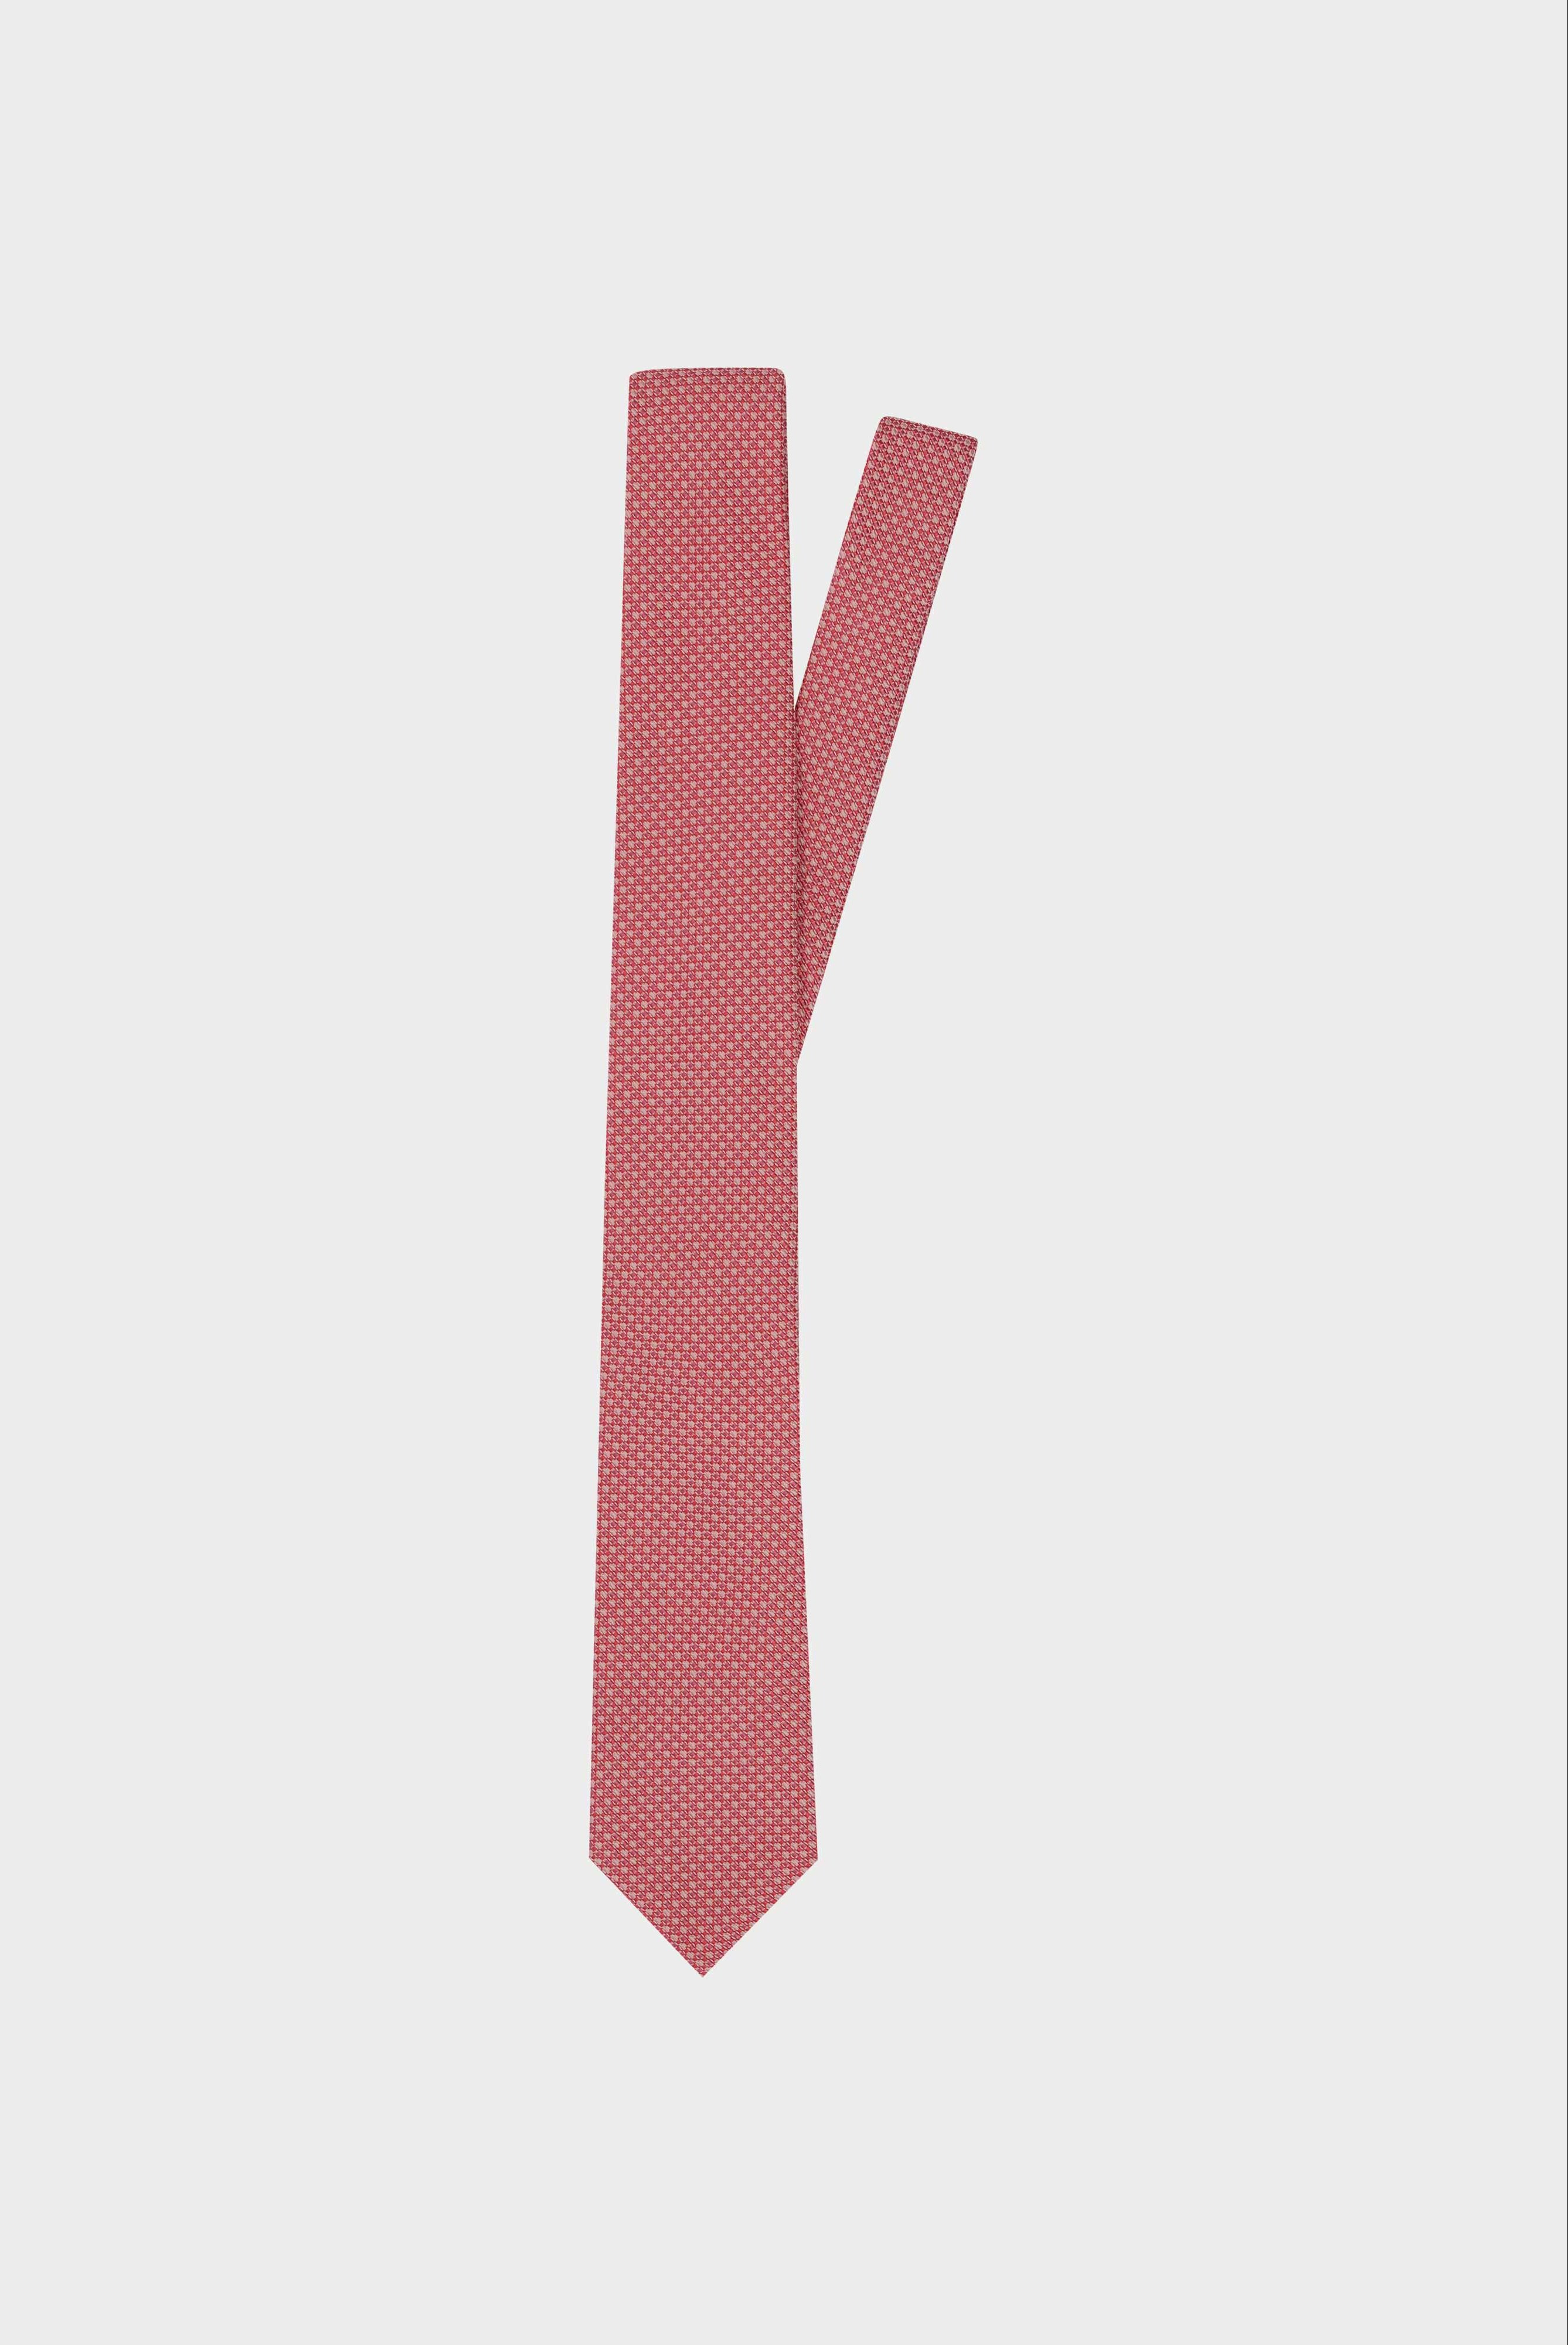 Seidenjacquard-Krawatte mit Struktur